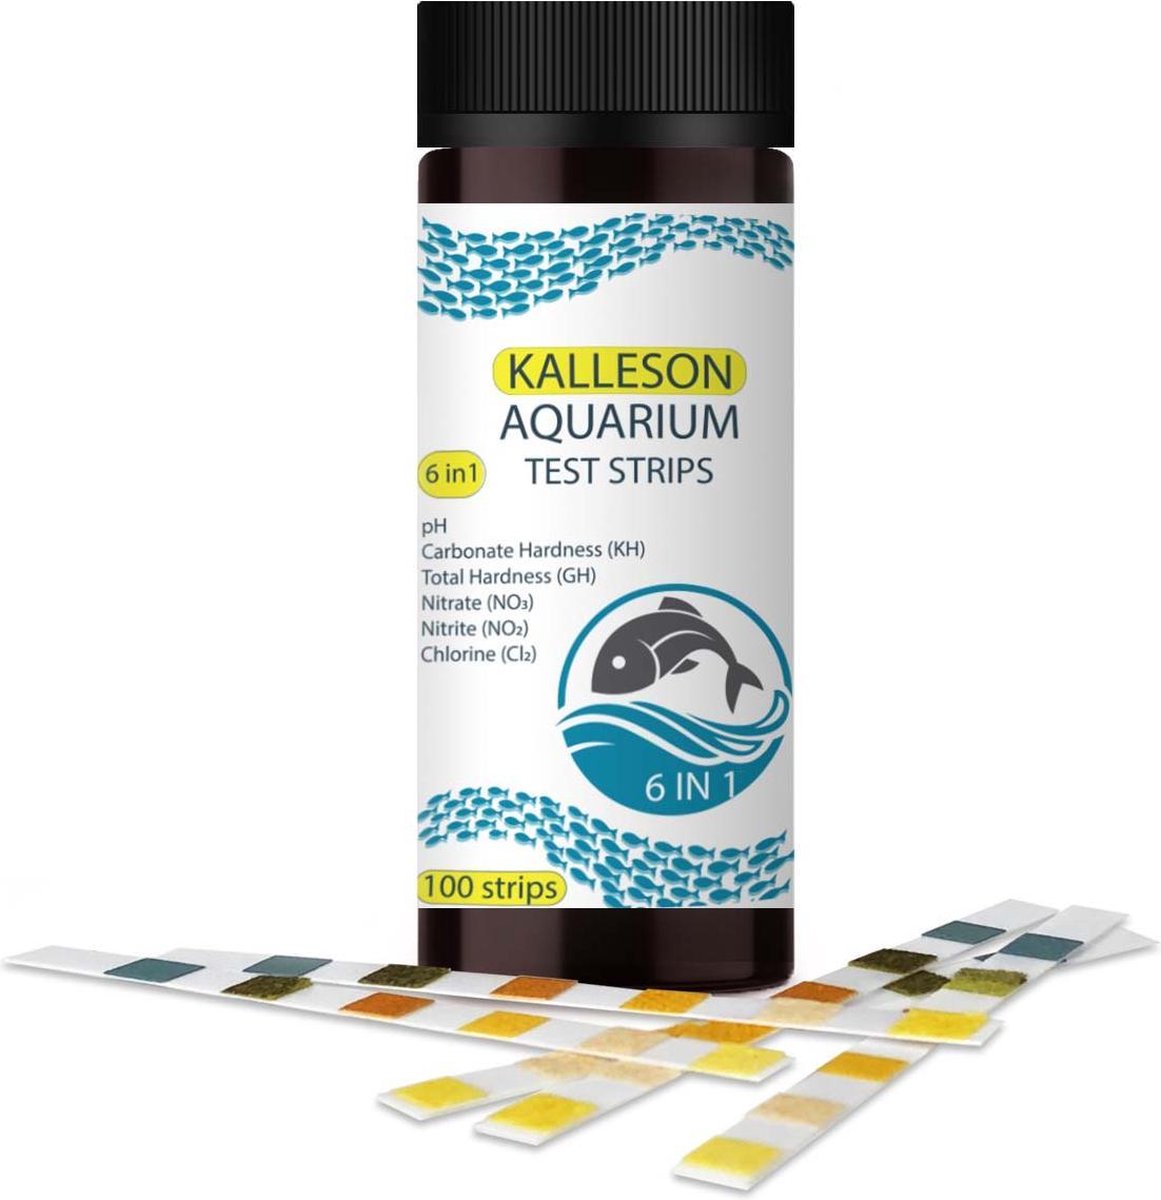 Aquarium Test Strips - 6 In 1 - Kalleson